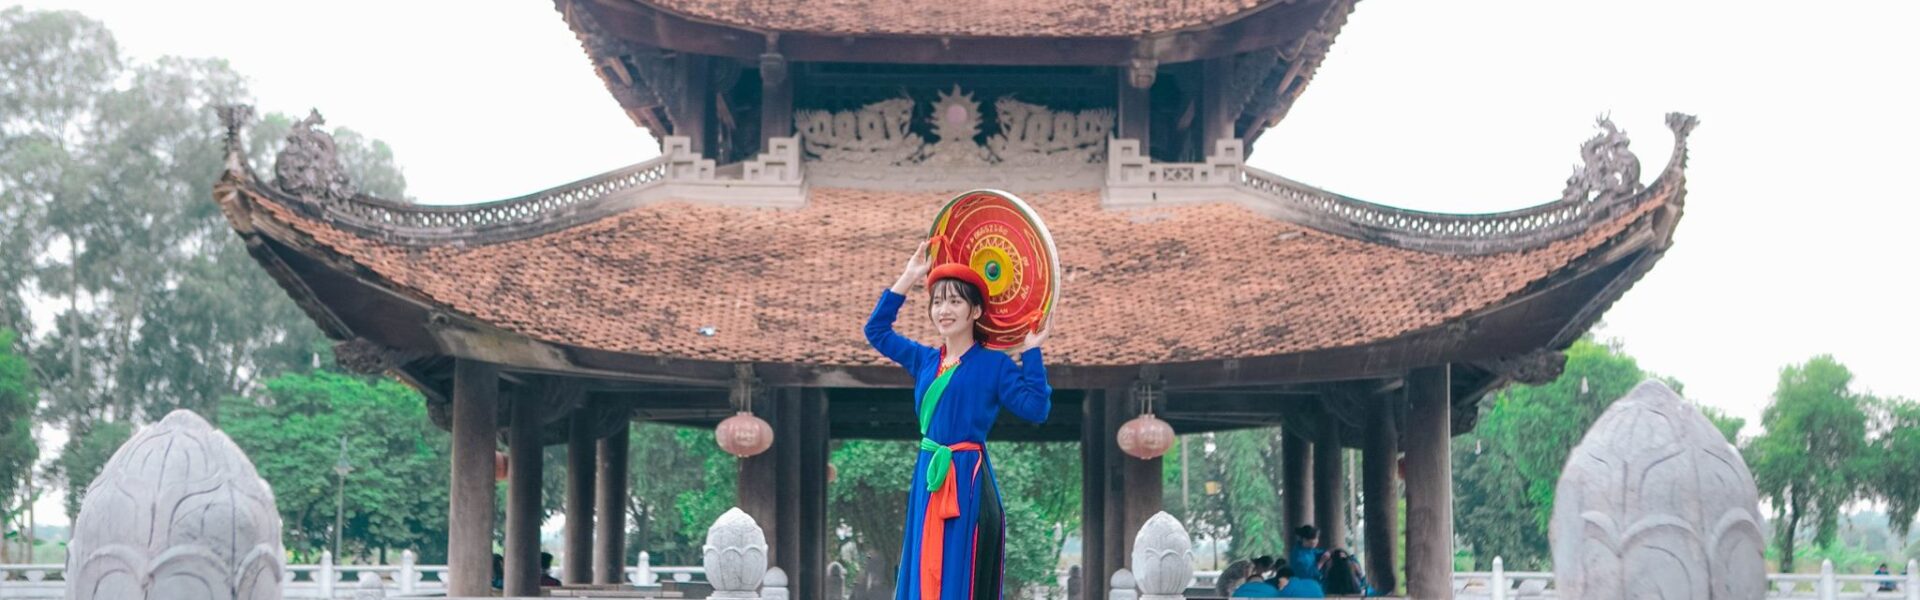 Kinh nghiệm du lịch Bắc Ninh chi tiết từ A – Z - Ảnh đại diện